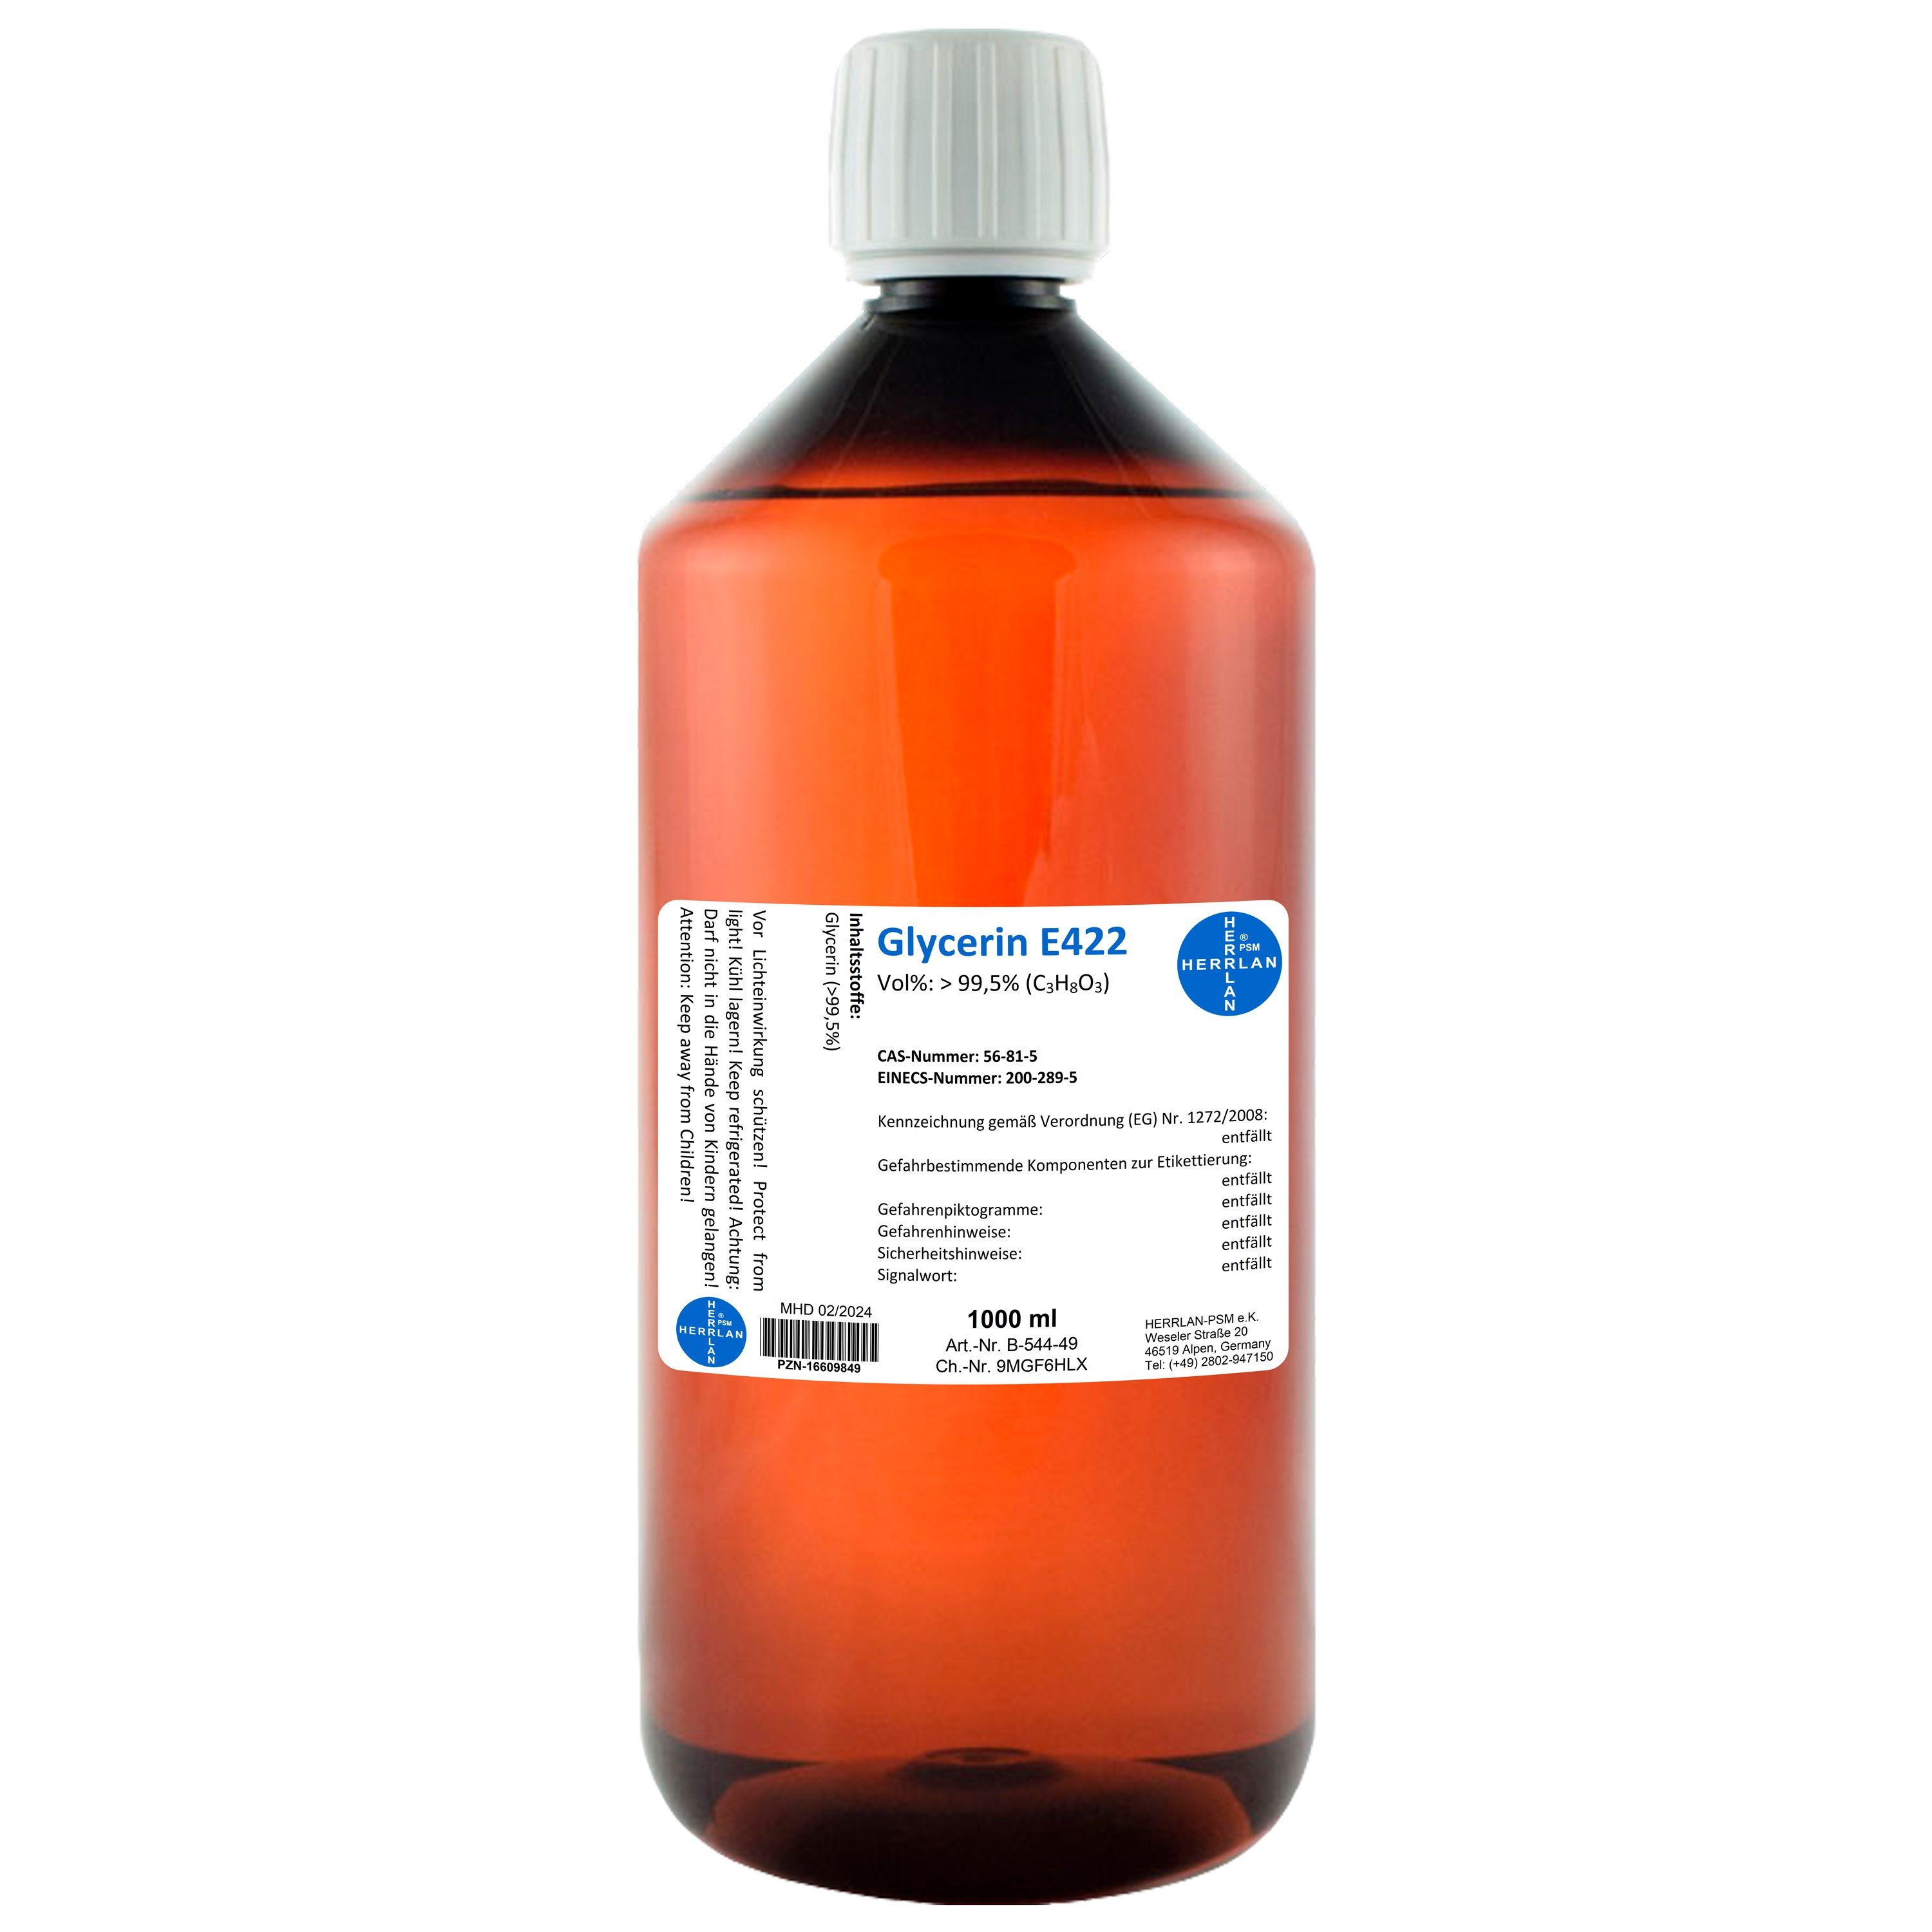 HERRLAN Rohseife Glycerin E422 - Pur VG zum Vorteilspreis, 1000 ml - Made in Germany | Handseifen